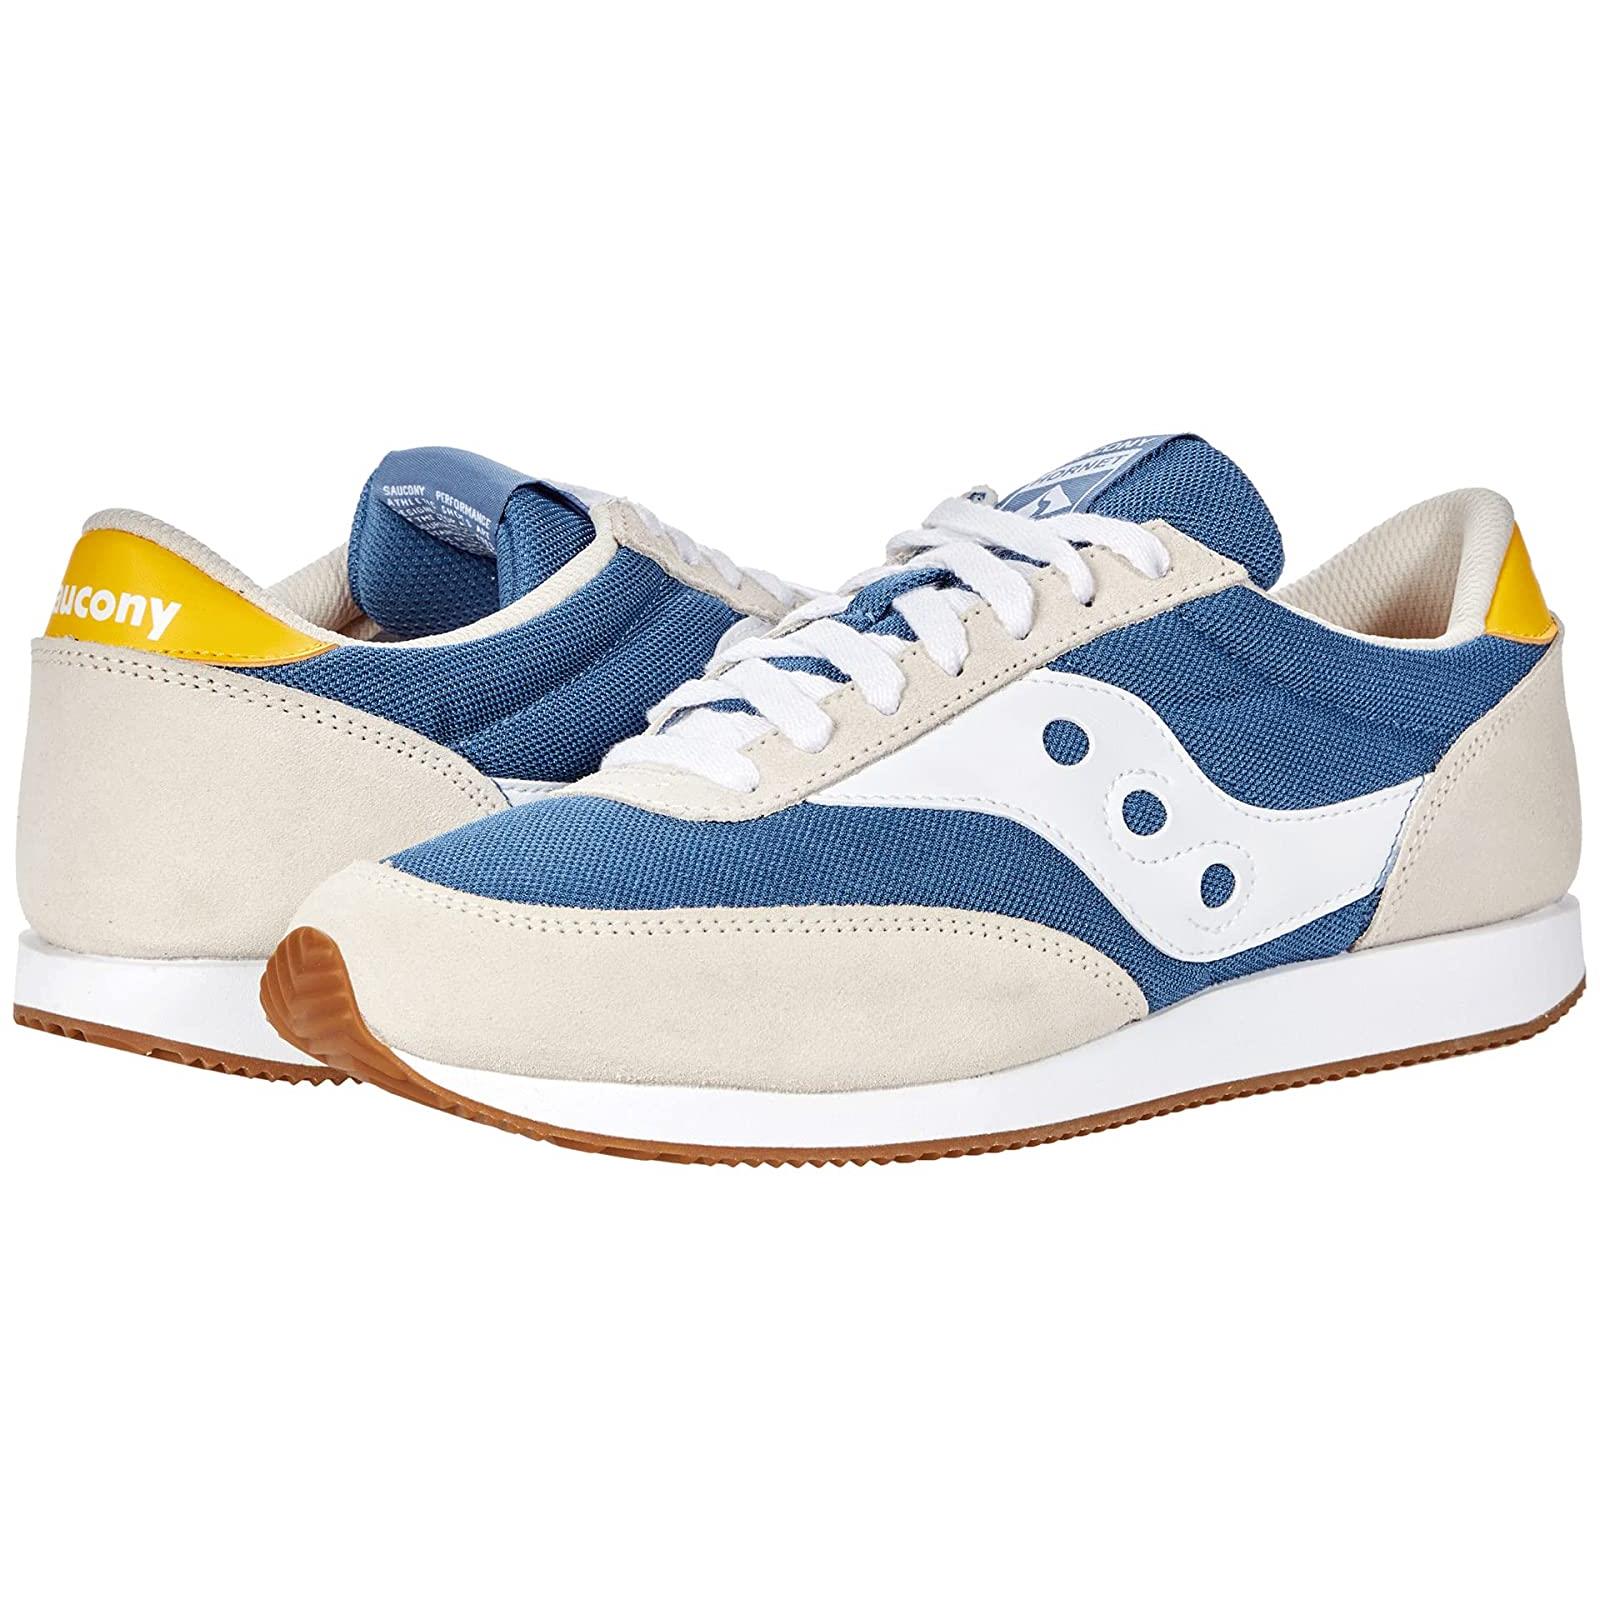 Adult Unisex Sneakers Athletic Shoes Saucony Originals Hornet Blue/Tan